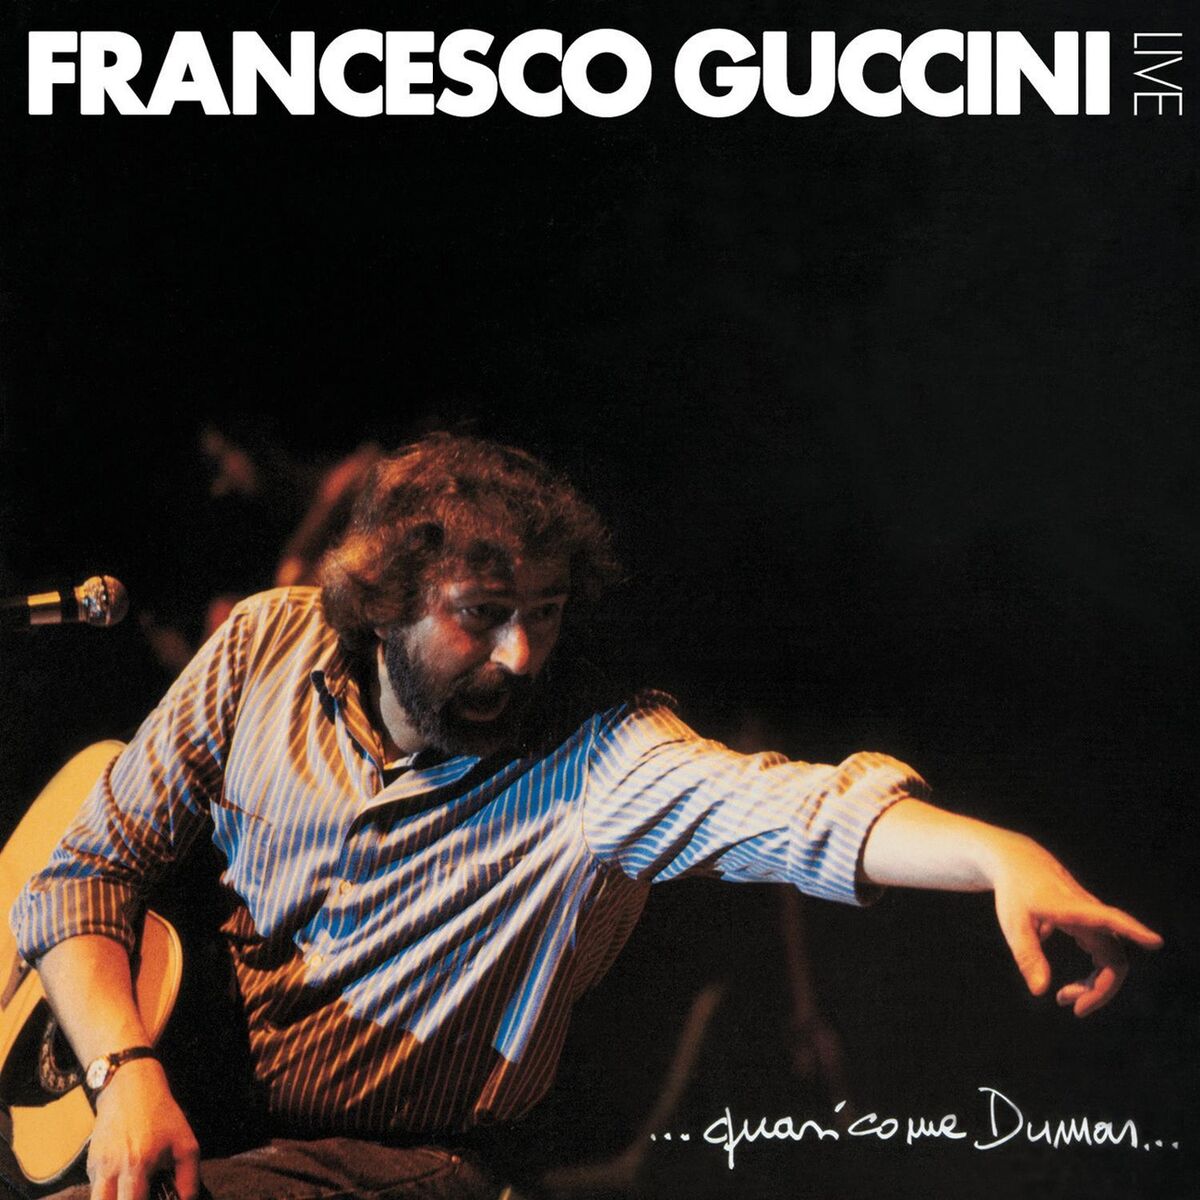 Francesco Guccini フランチェスコ グッチーニ 曲 アルバム - クラシック